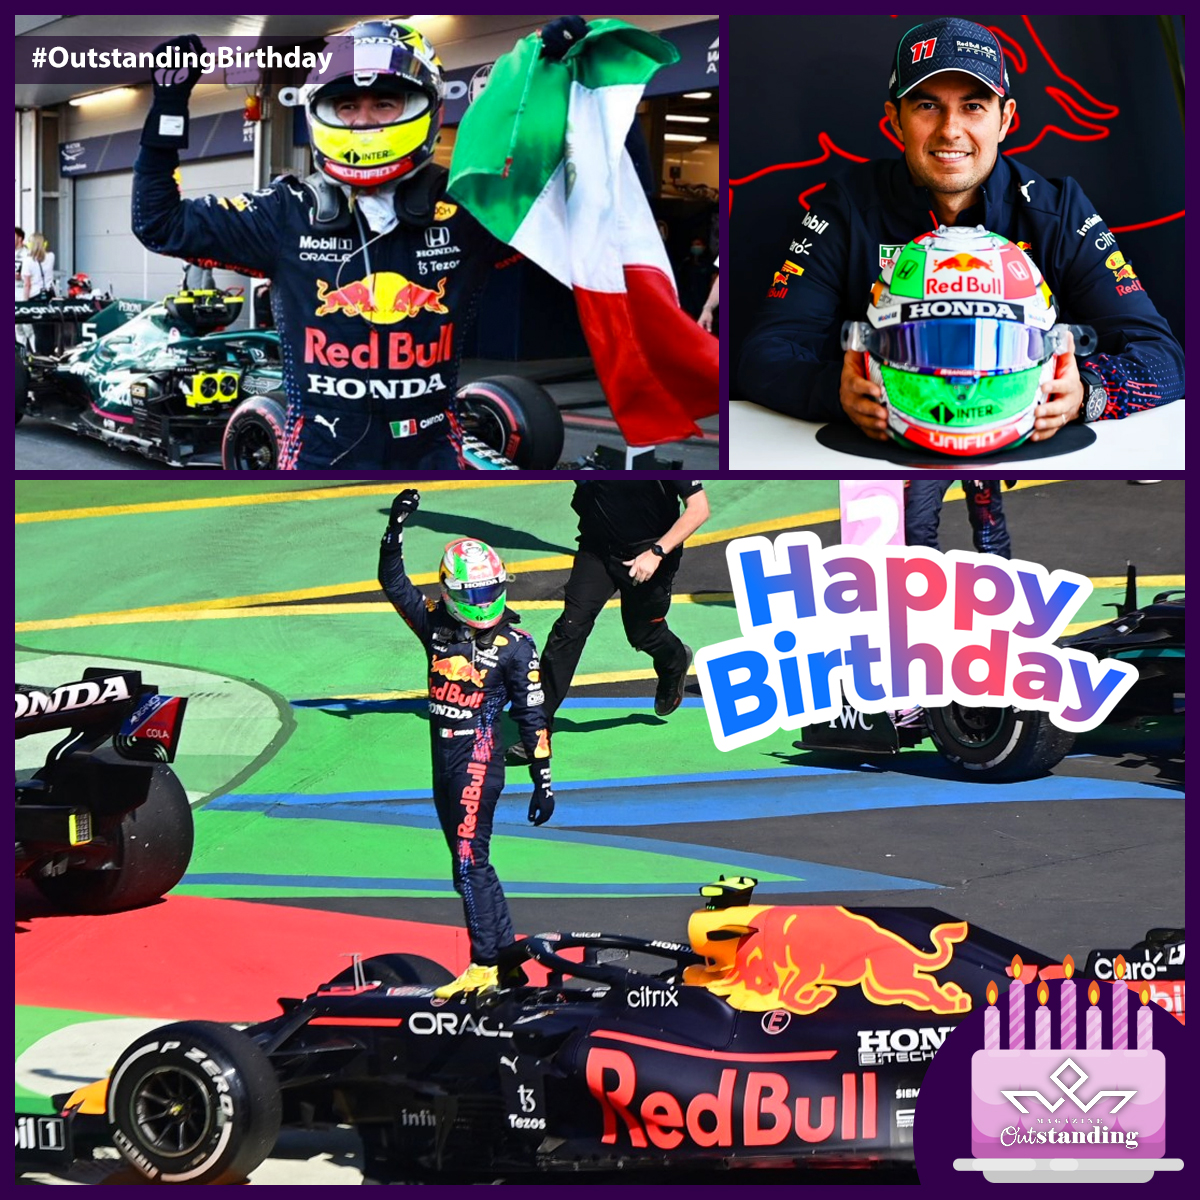 ¡Feliz cumpleaños, #SergioPérez!
Piloto de automovilismo mexicano de la escudería #RedBullRacing.
¡Feliz cumpleaños, #ViejoSabroso!

#OutstandingBirthday #ChecoPérez #RedBull #F1 #ForceIndia #REdBullRacing #RedBullRacingF1 #RedBullRacingTeam